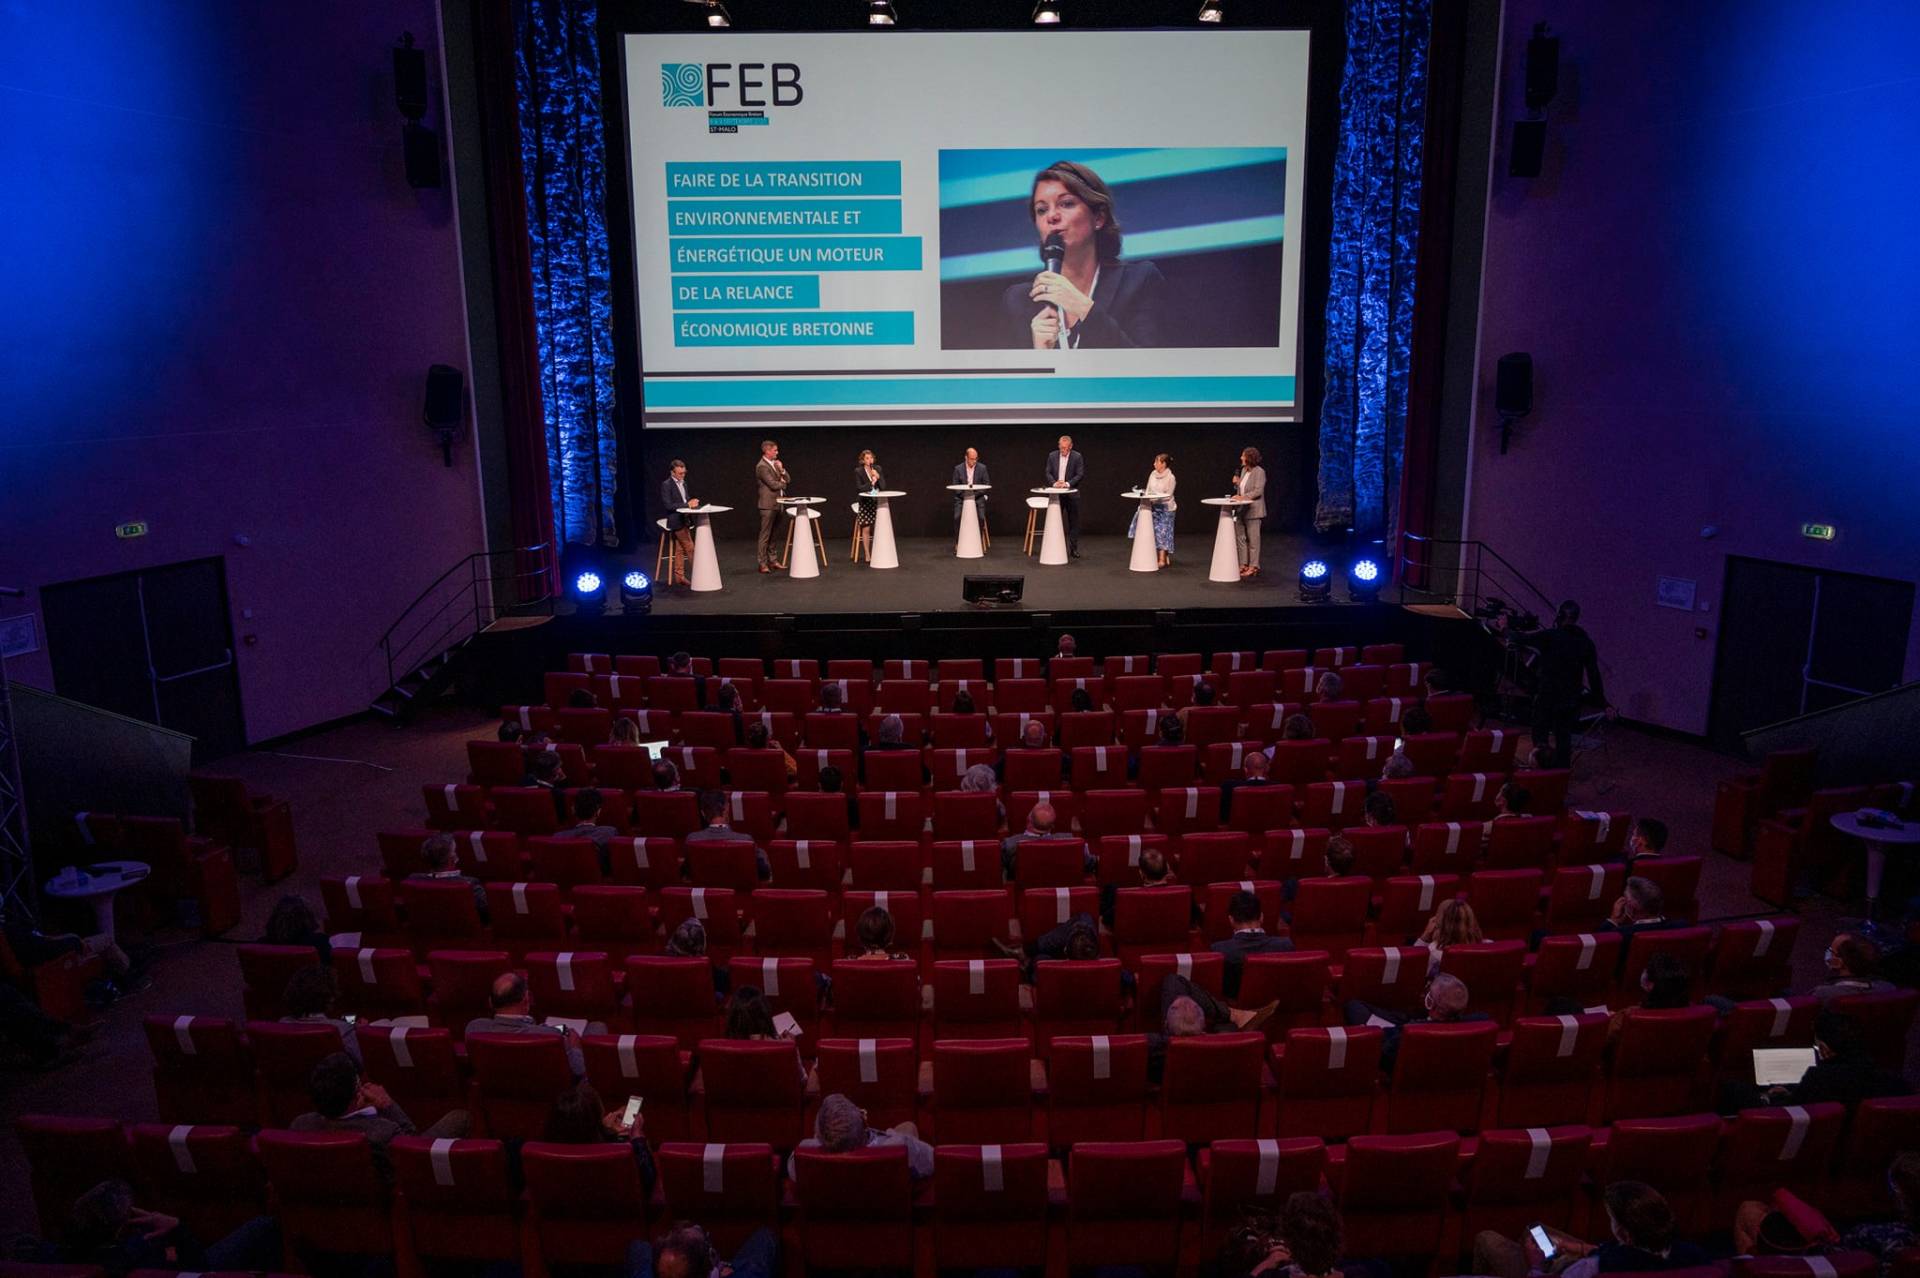 Les 8 et 9 septembre 2020, s'est tenu le Forum Économique Breton qui a réuni des décideurs économiques, financiers et publics de Bretagne au Palais du Grand Large, à Saint-Malo.